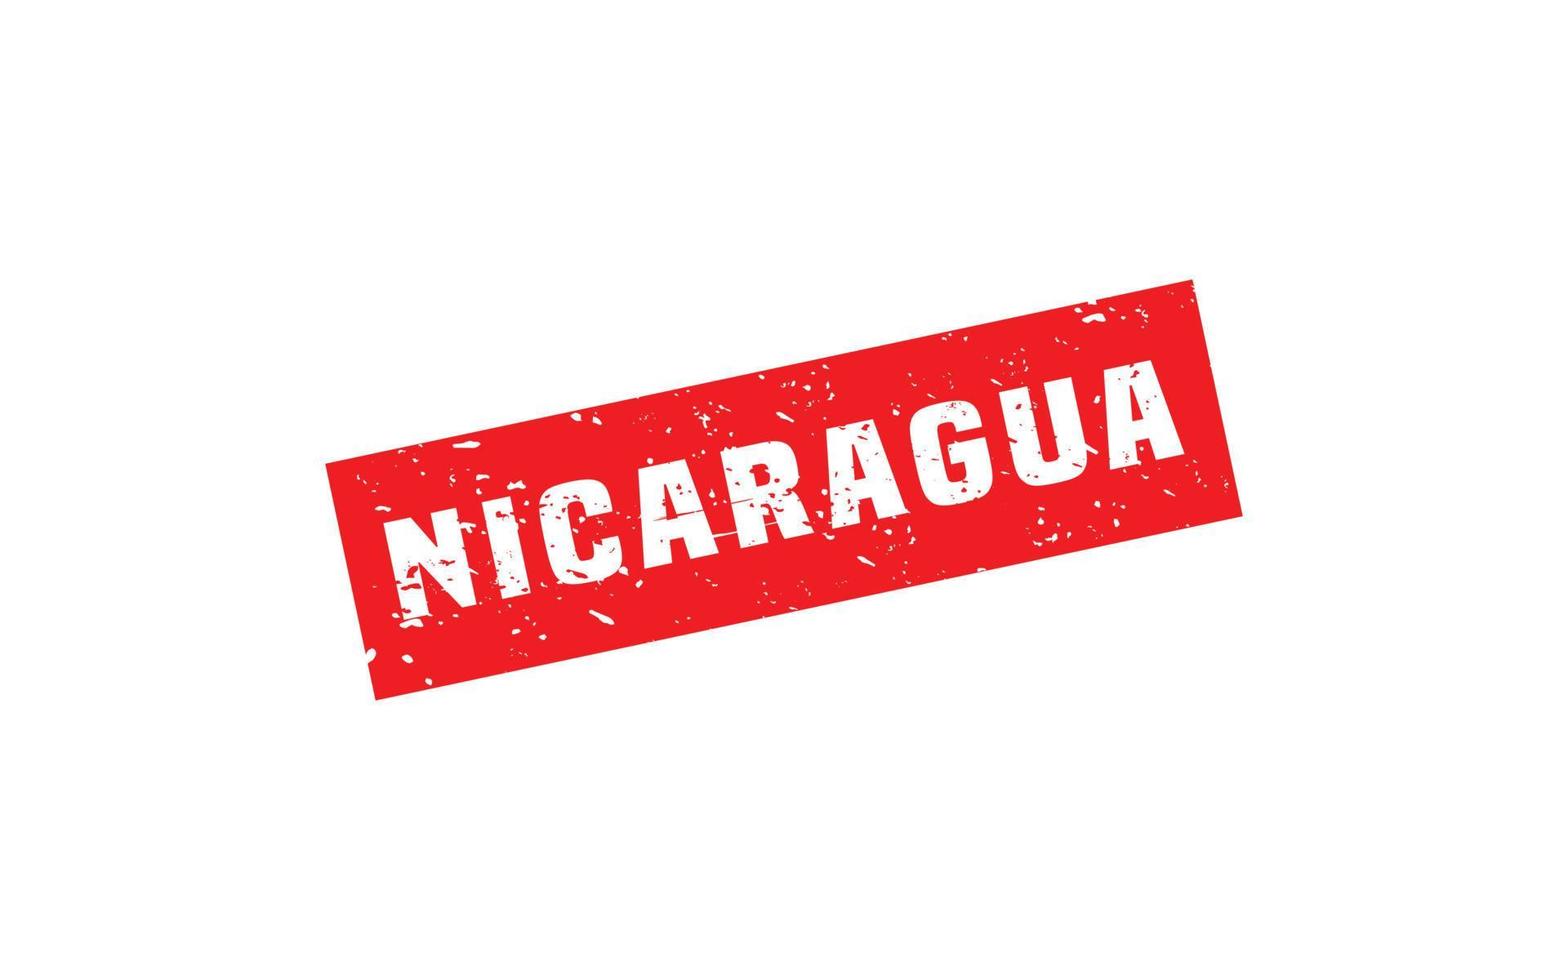 Nicaragua postzegel rubber met grunge stijl Aan wit achtergrond vector